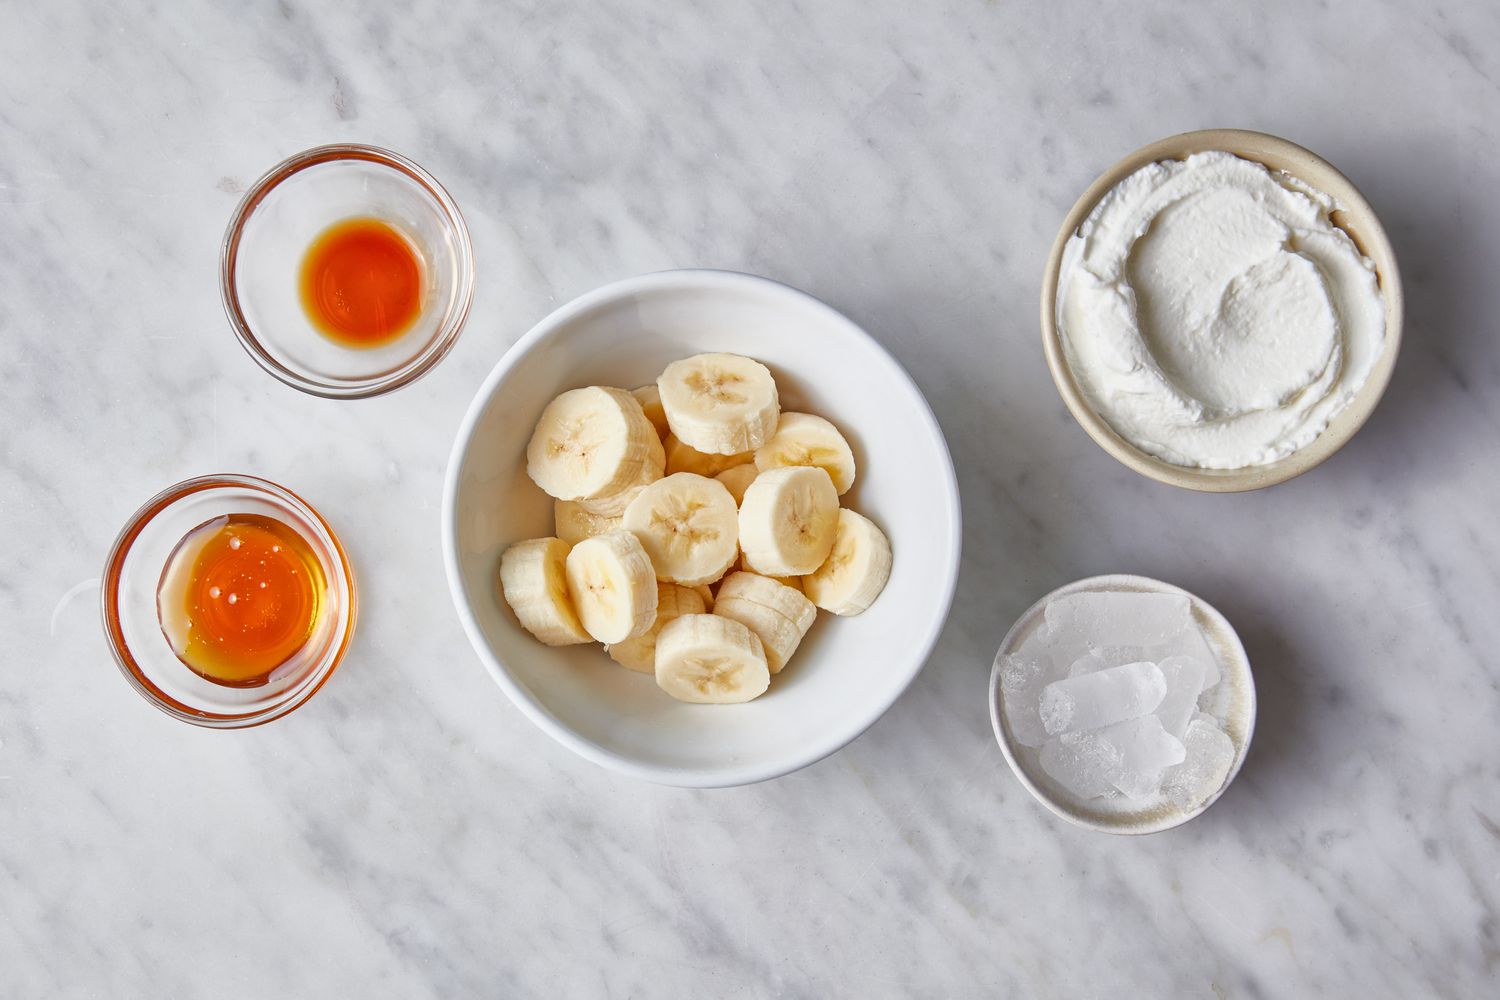 Ingredients to make banana smoothies